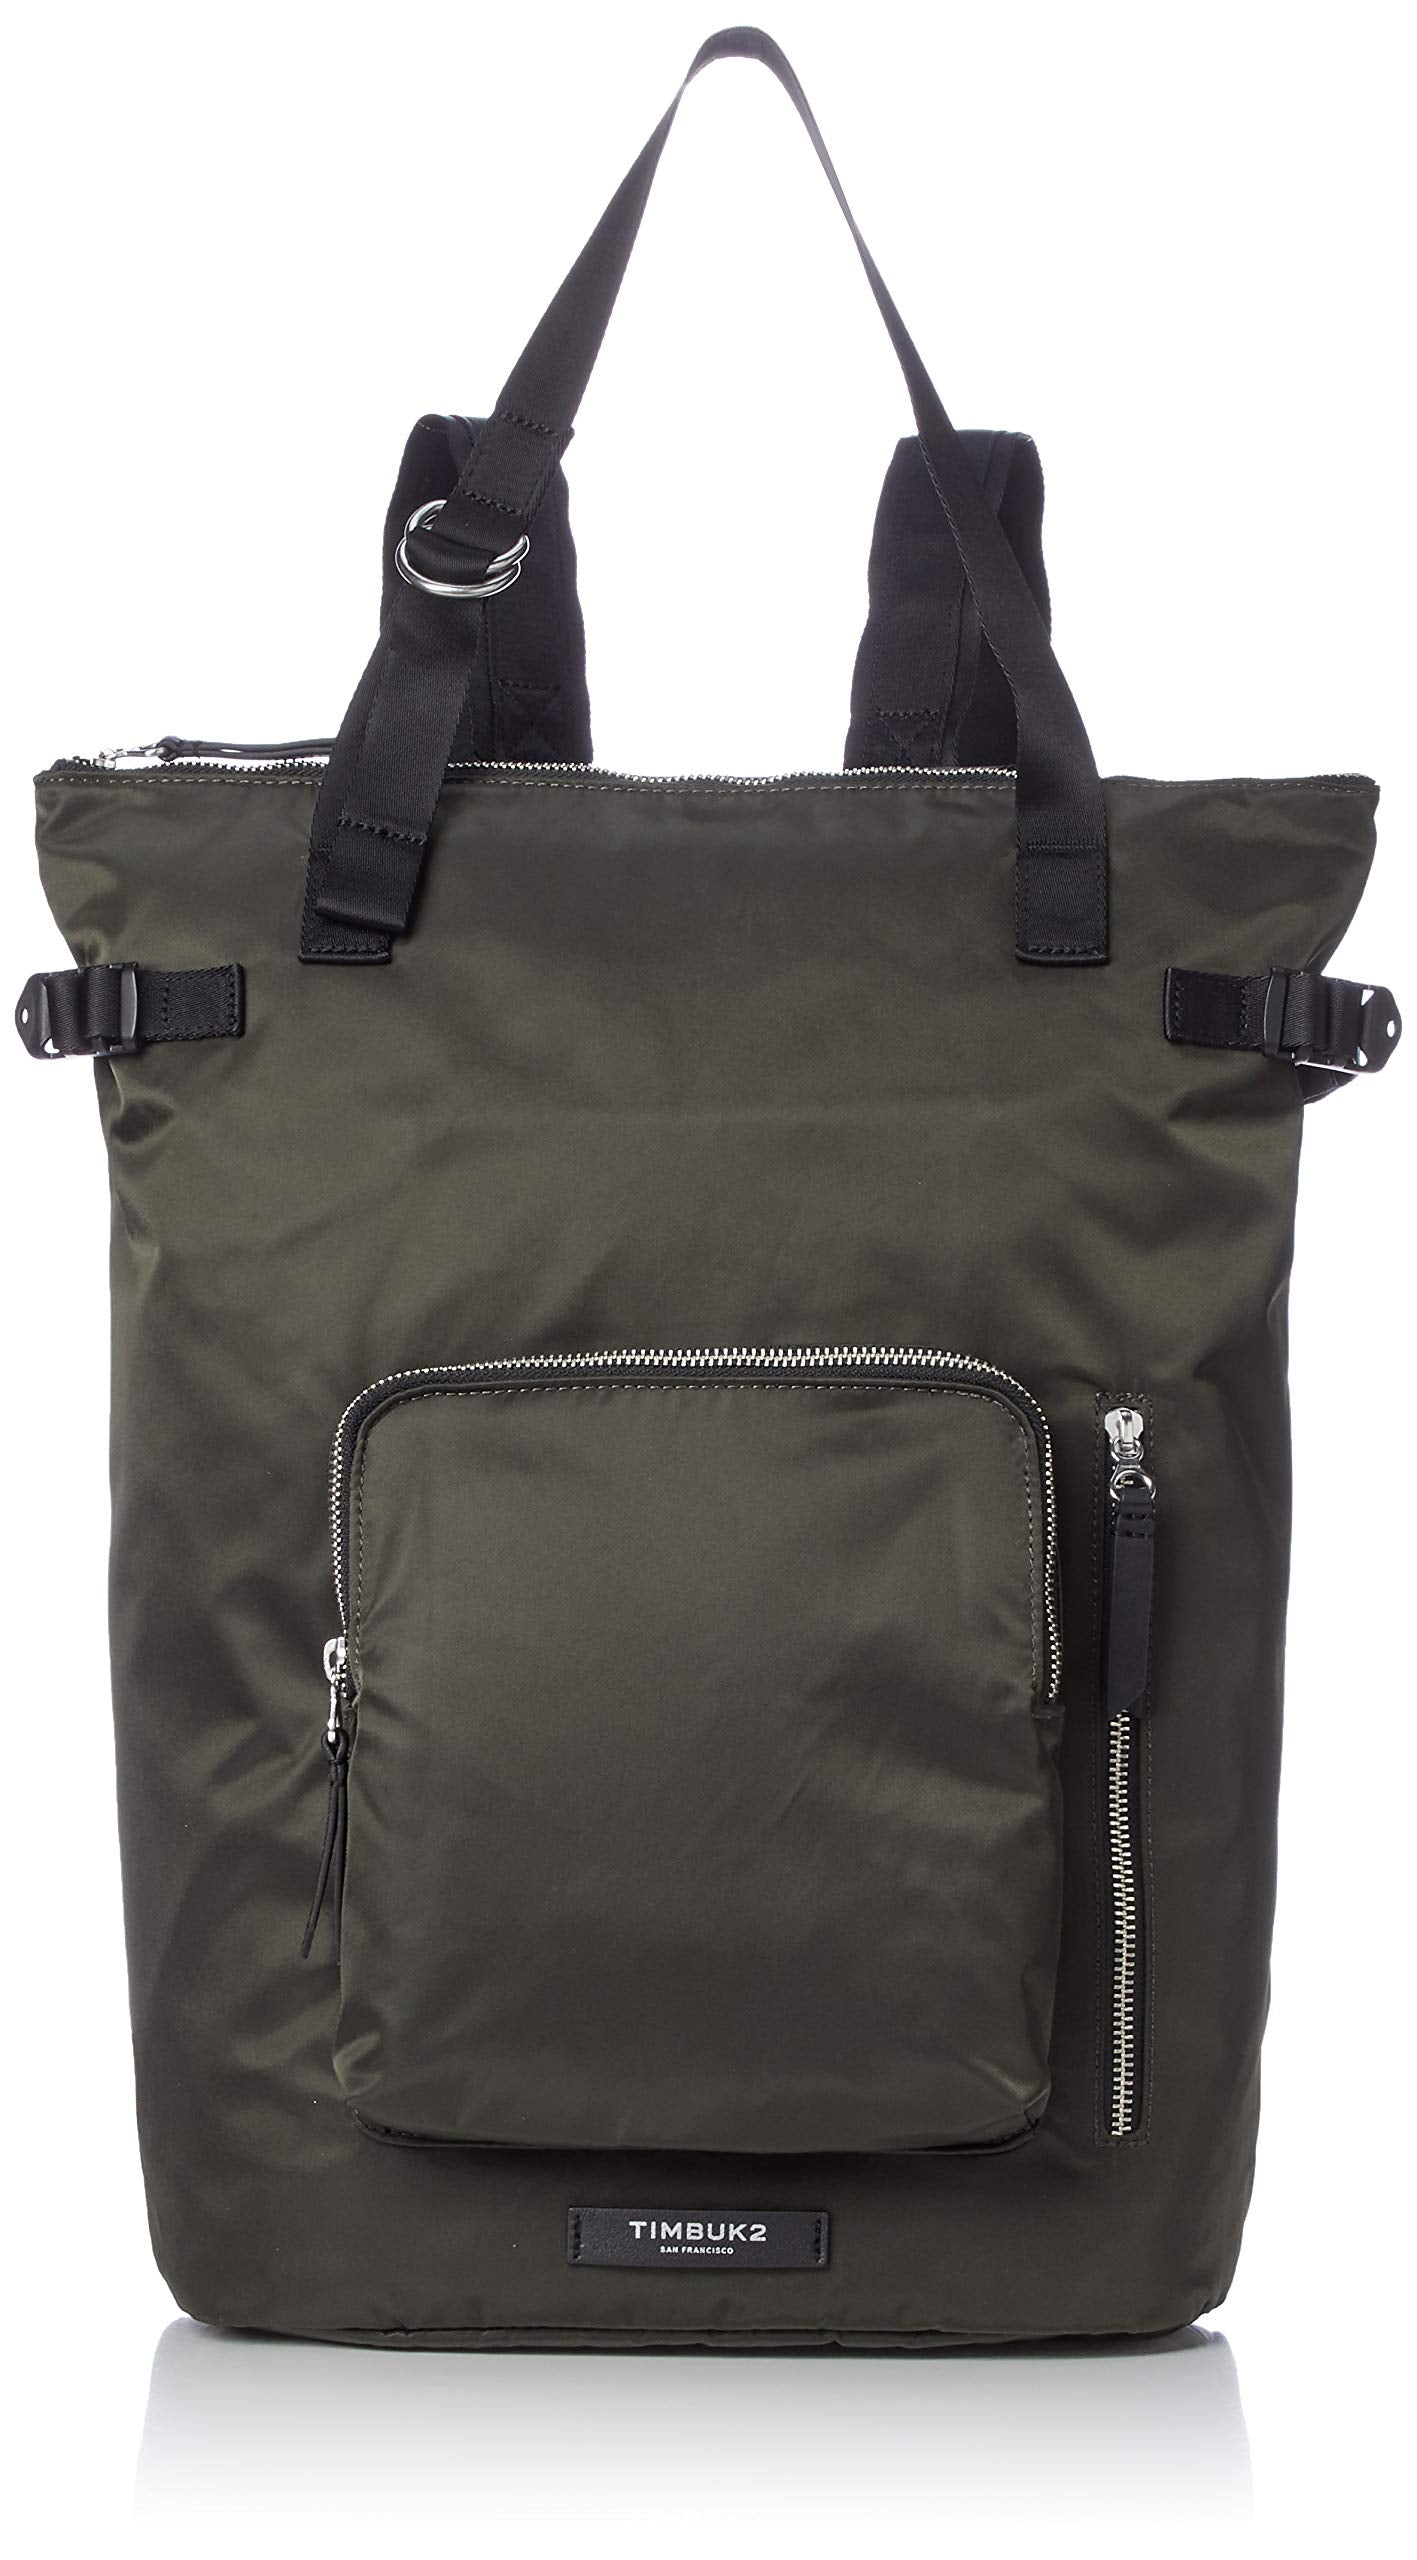 Timbuk2 2189-3-6634 Convertible Backpack Tote, Army– backpacks4less.com